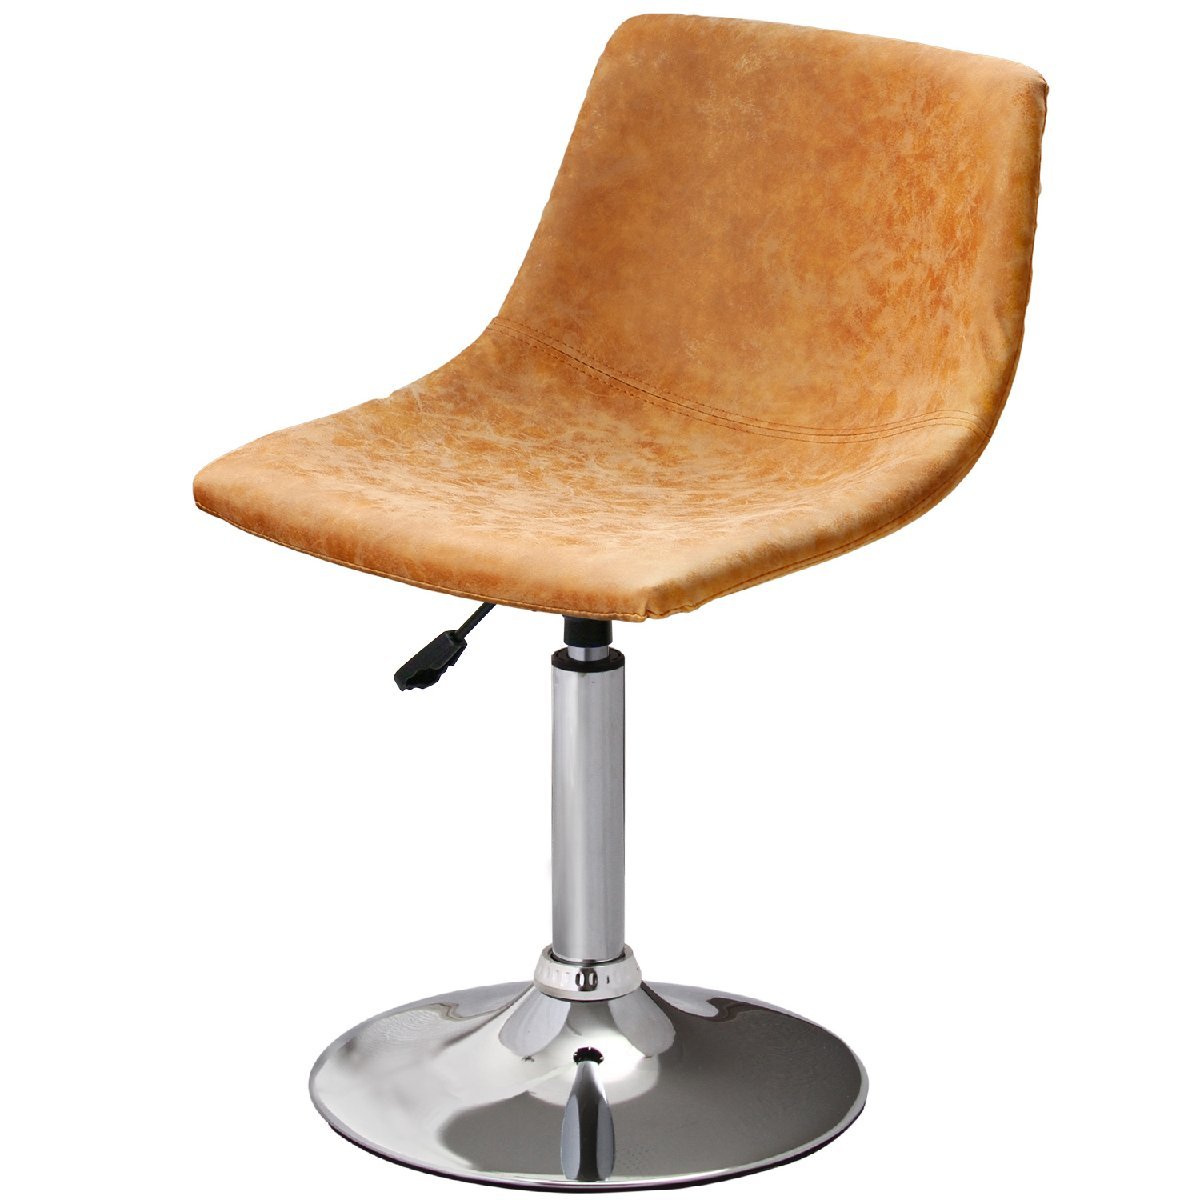 【新品】昇降式カウンターチェア ロータイプ WY-864QS アンティークキャメル 家具 椅子